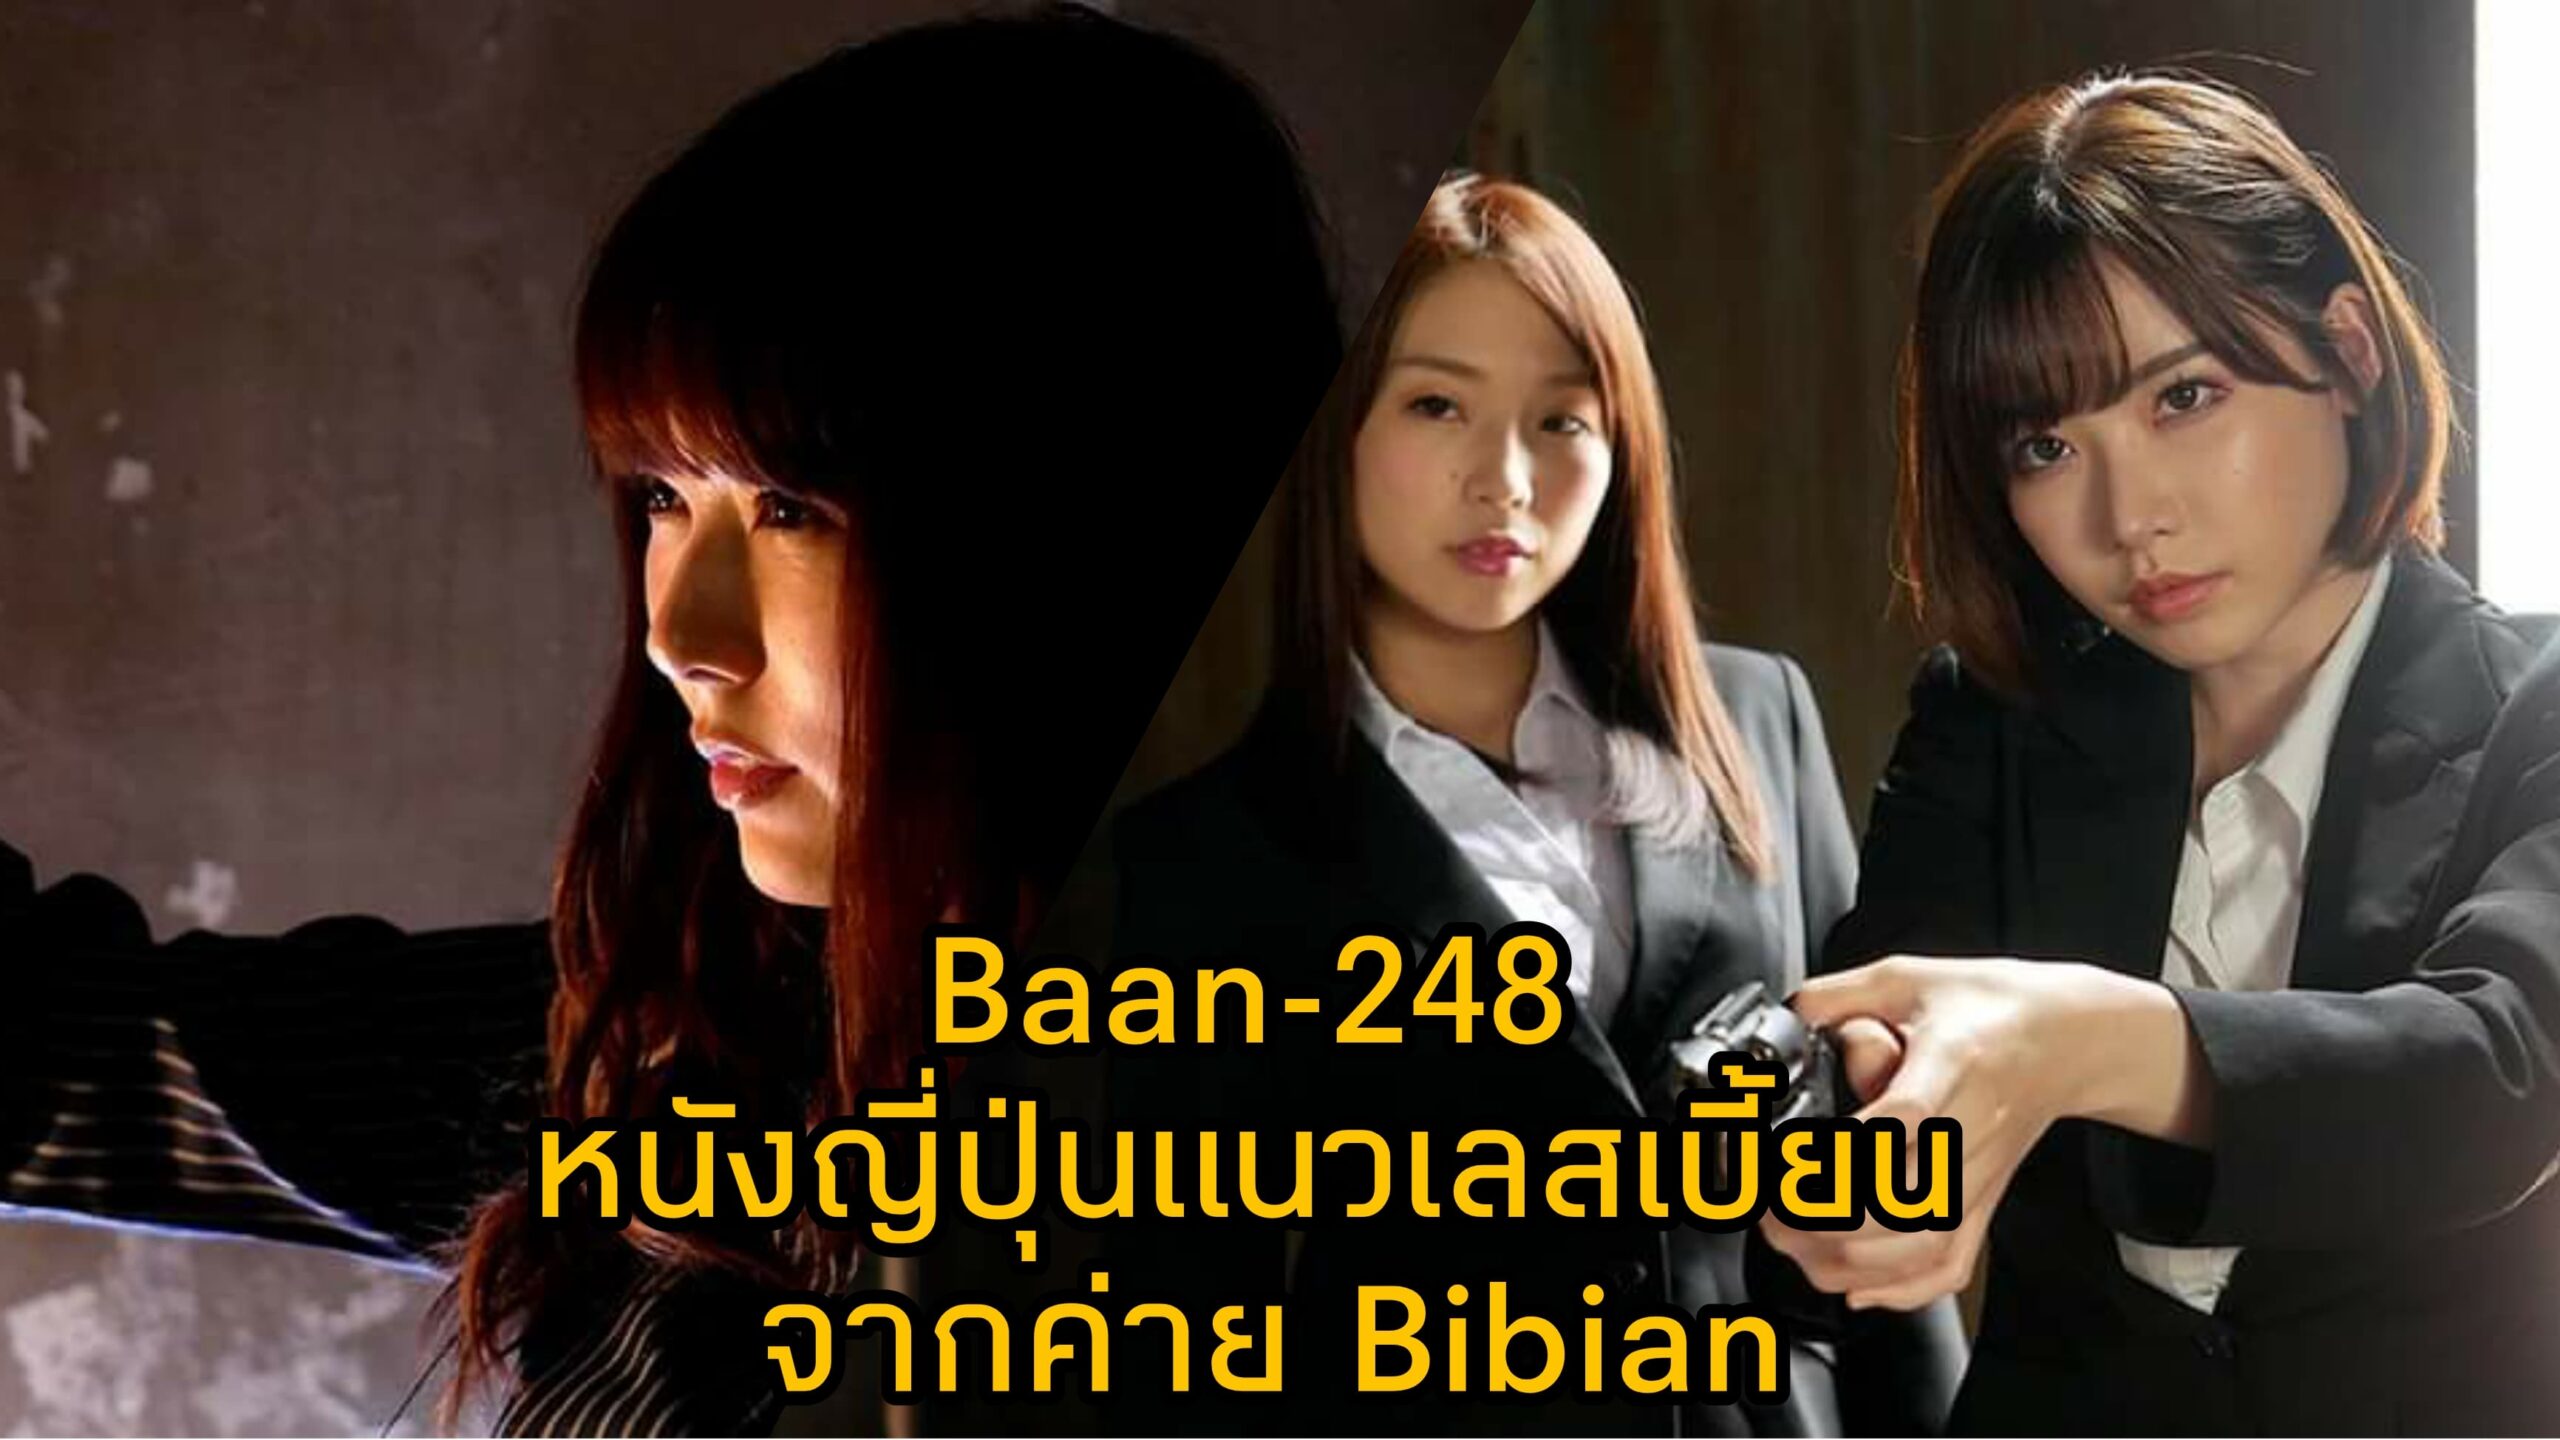 Bann-248 หนัง JAV แนวเลสเบี้ยน นำแสดงโดย 3 ตัวแม่แห่งวงการเอวี Eimi Fukada 9